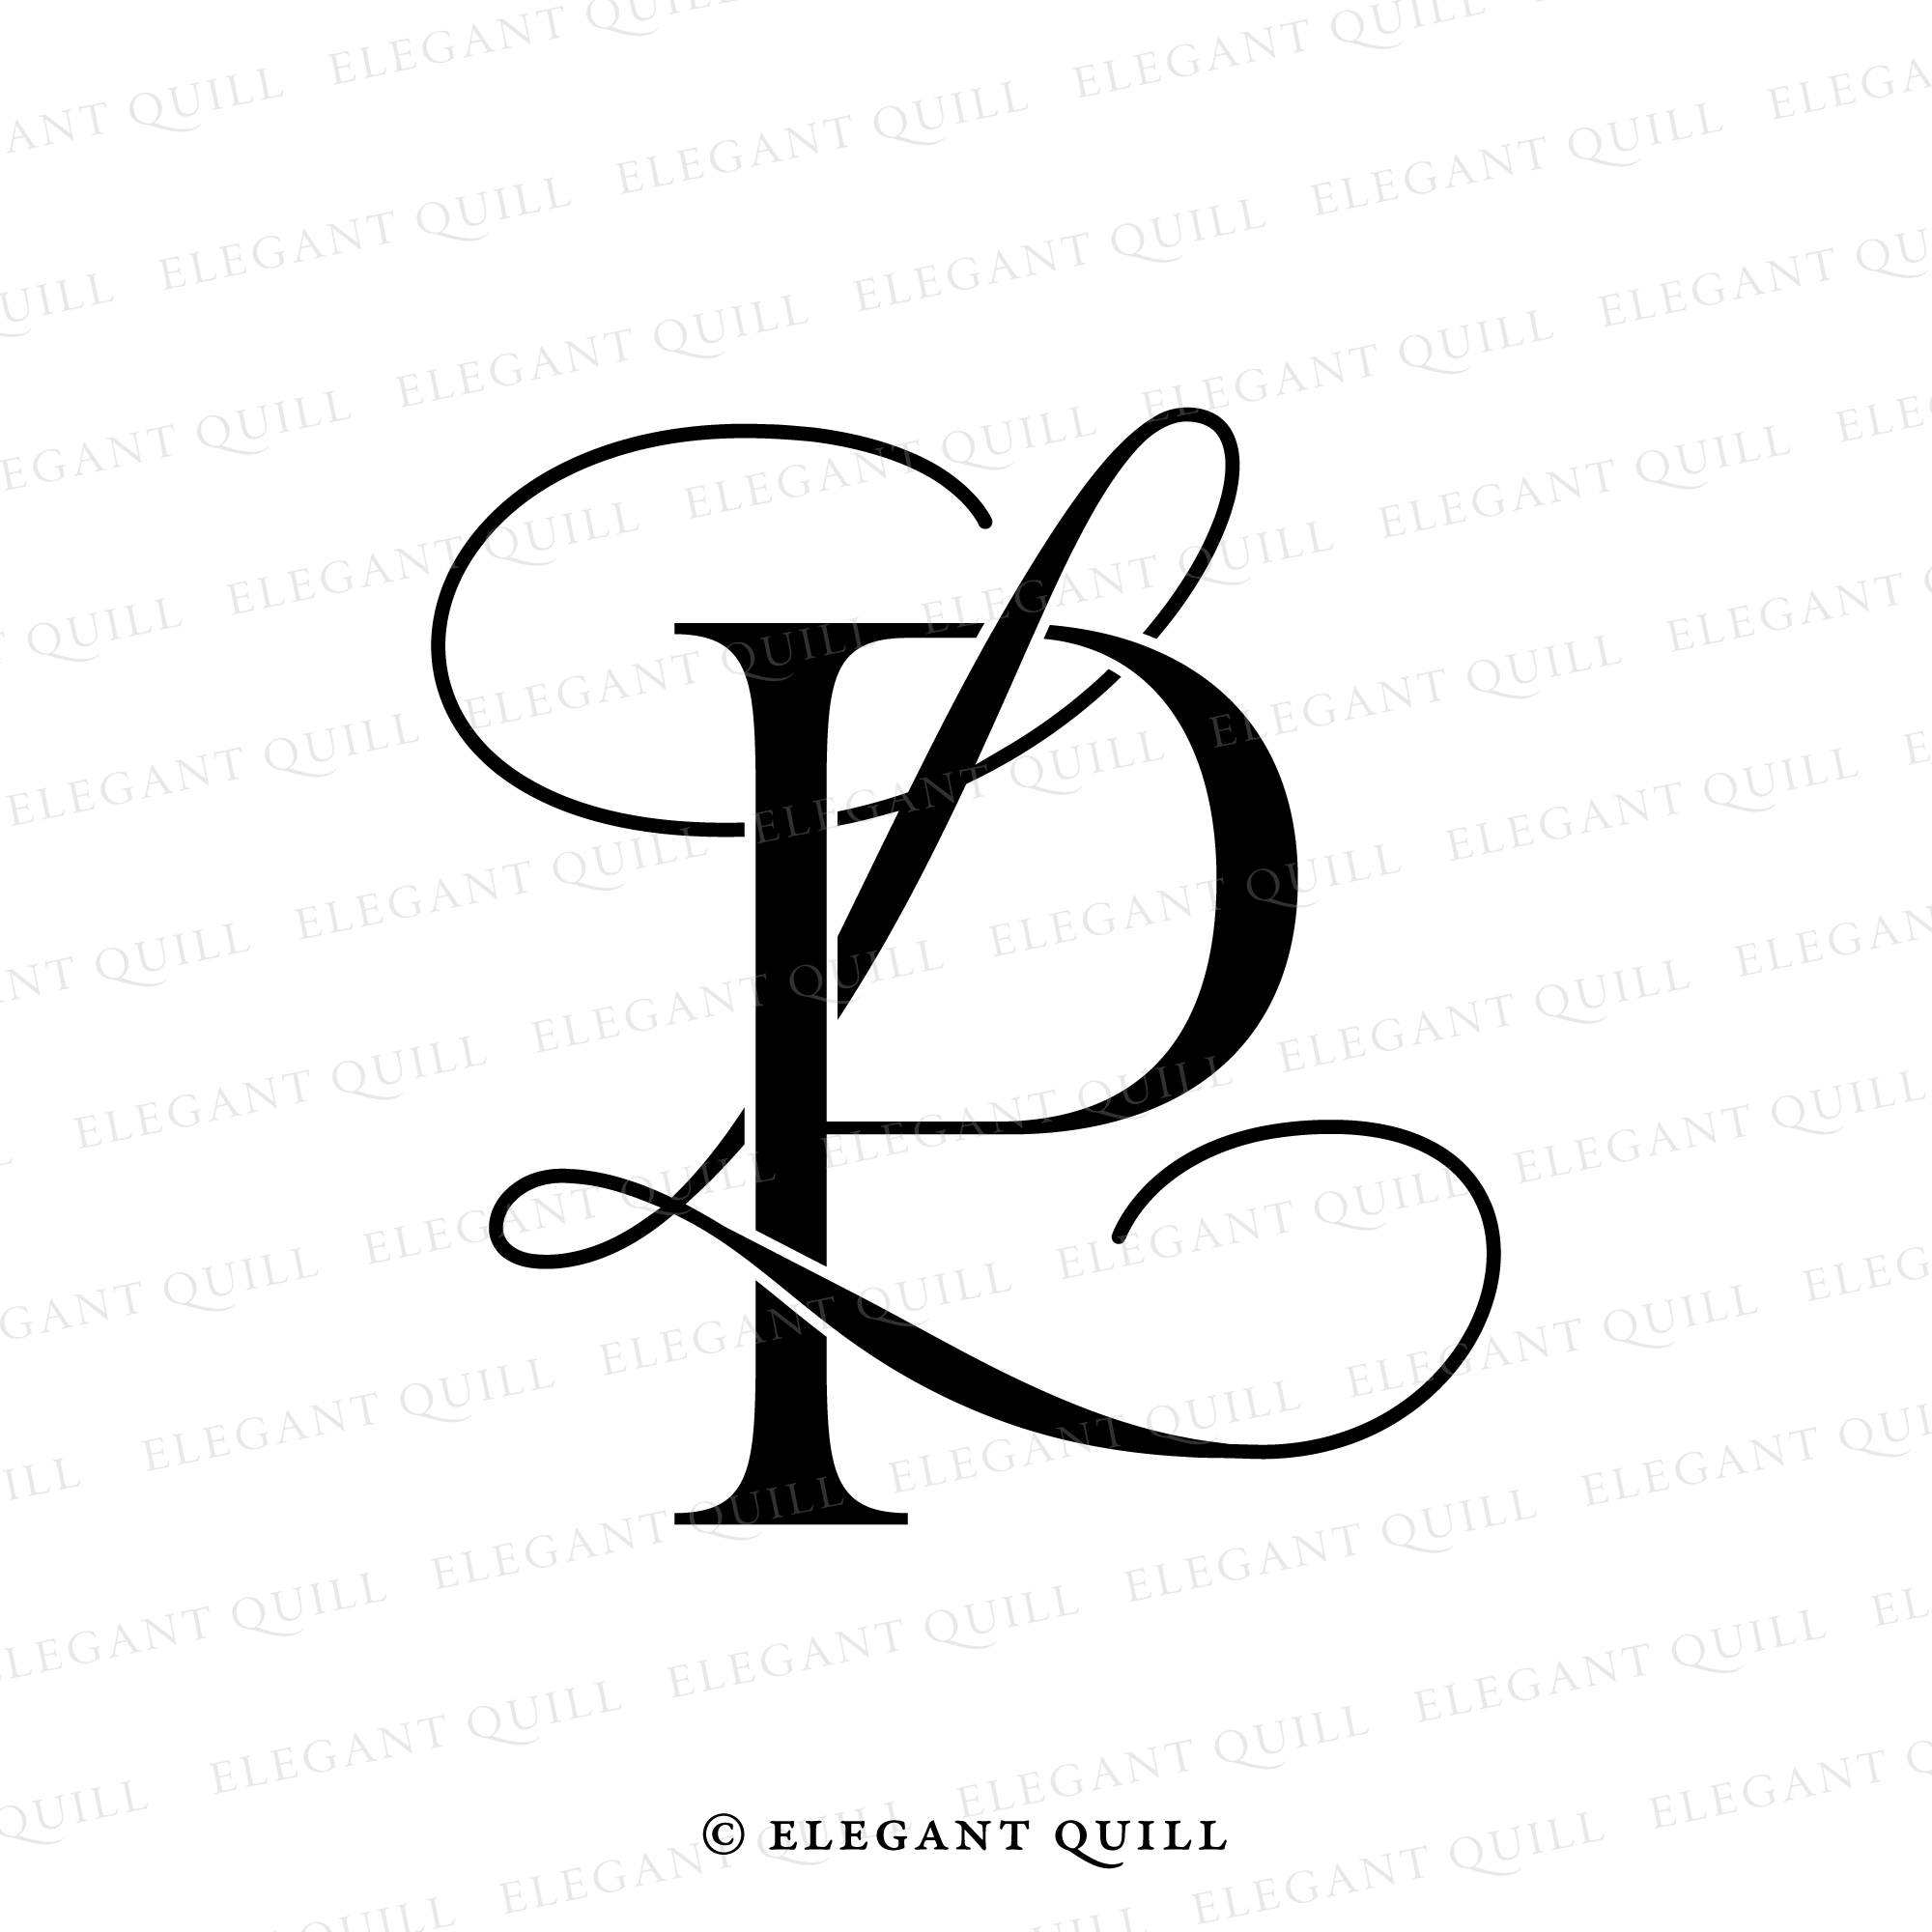 Design for lp | Logo design contest | 99designs